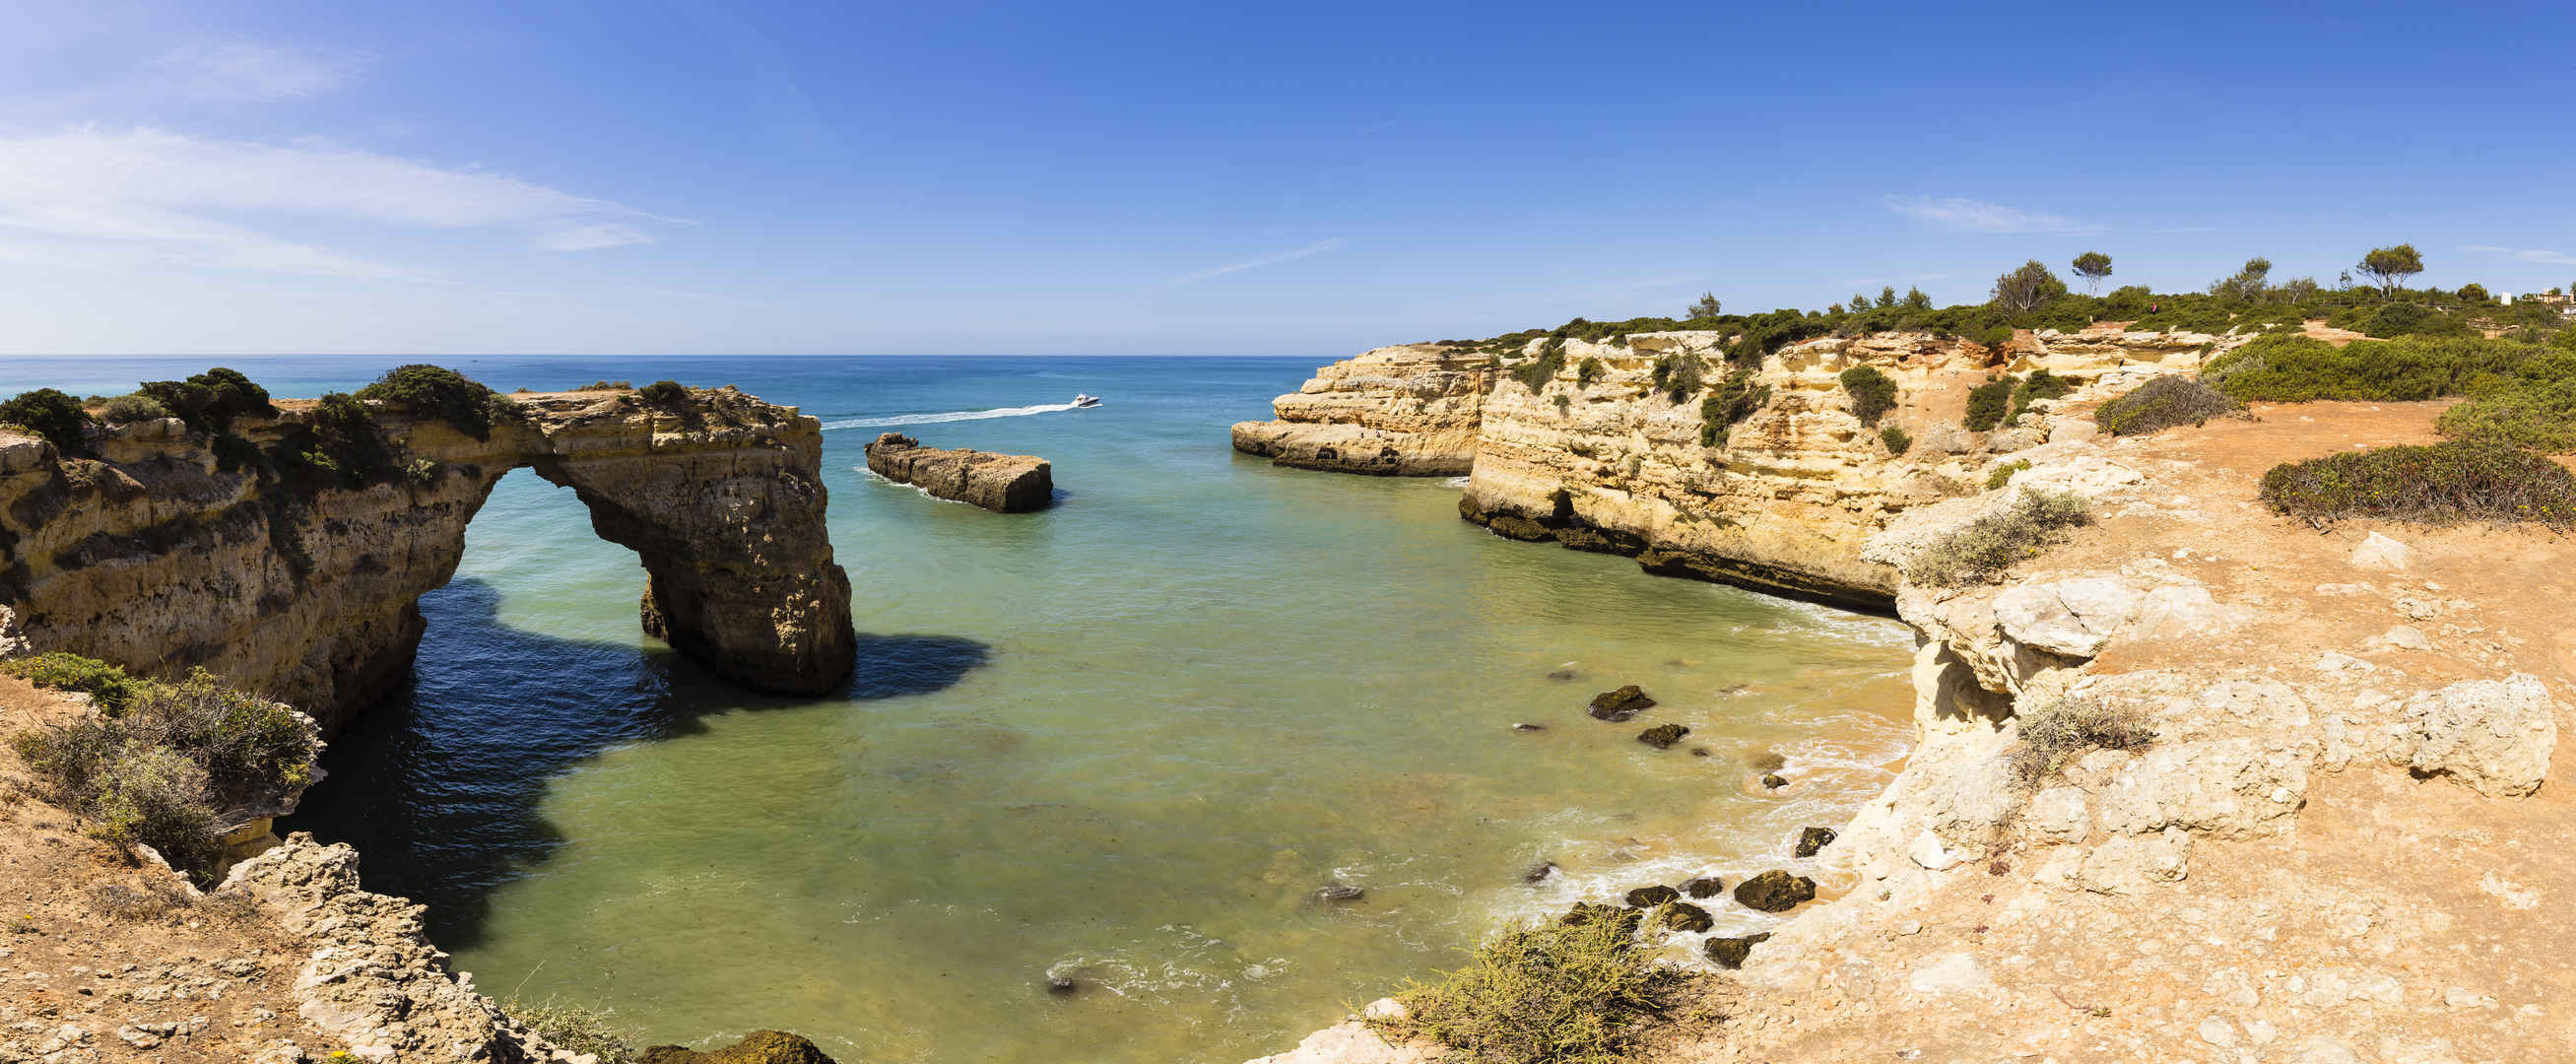 天然拱 小 沙滩 下方 峭壁 阿尔加维 葡萄牙7k壁纸-